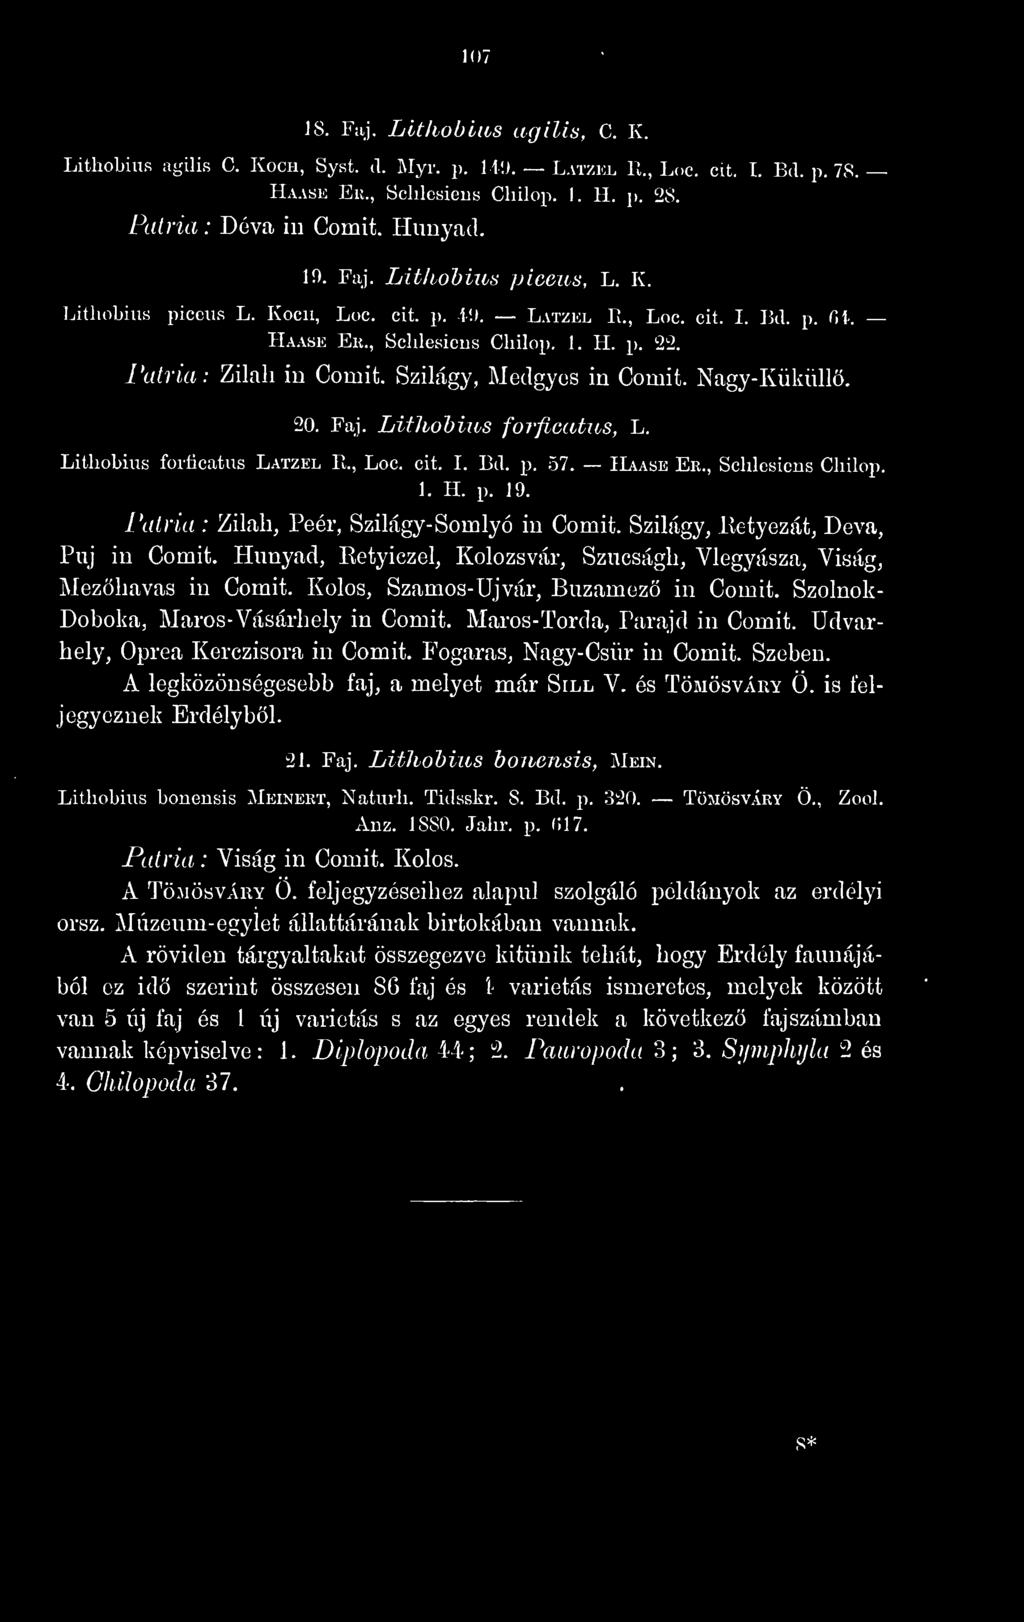 Faj. Lithohius forficatus, L. Lithobius forficatus Latzel R., Loc. cit. I. Bd. p. 57. îlvase Er., Schlesiens Cliilop. 1. H. p. 19. Zilah, Peer, Szilágy- Somlyó in Comit.